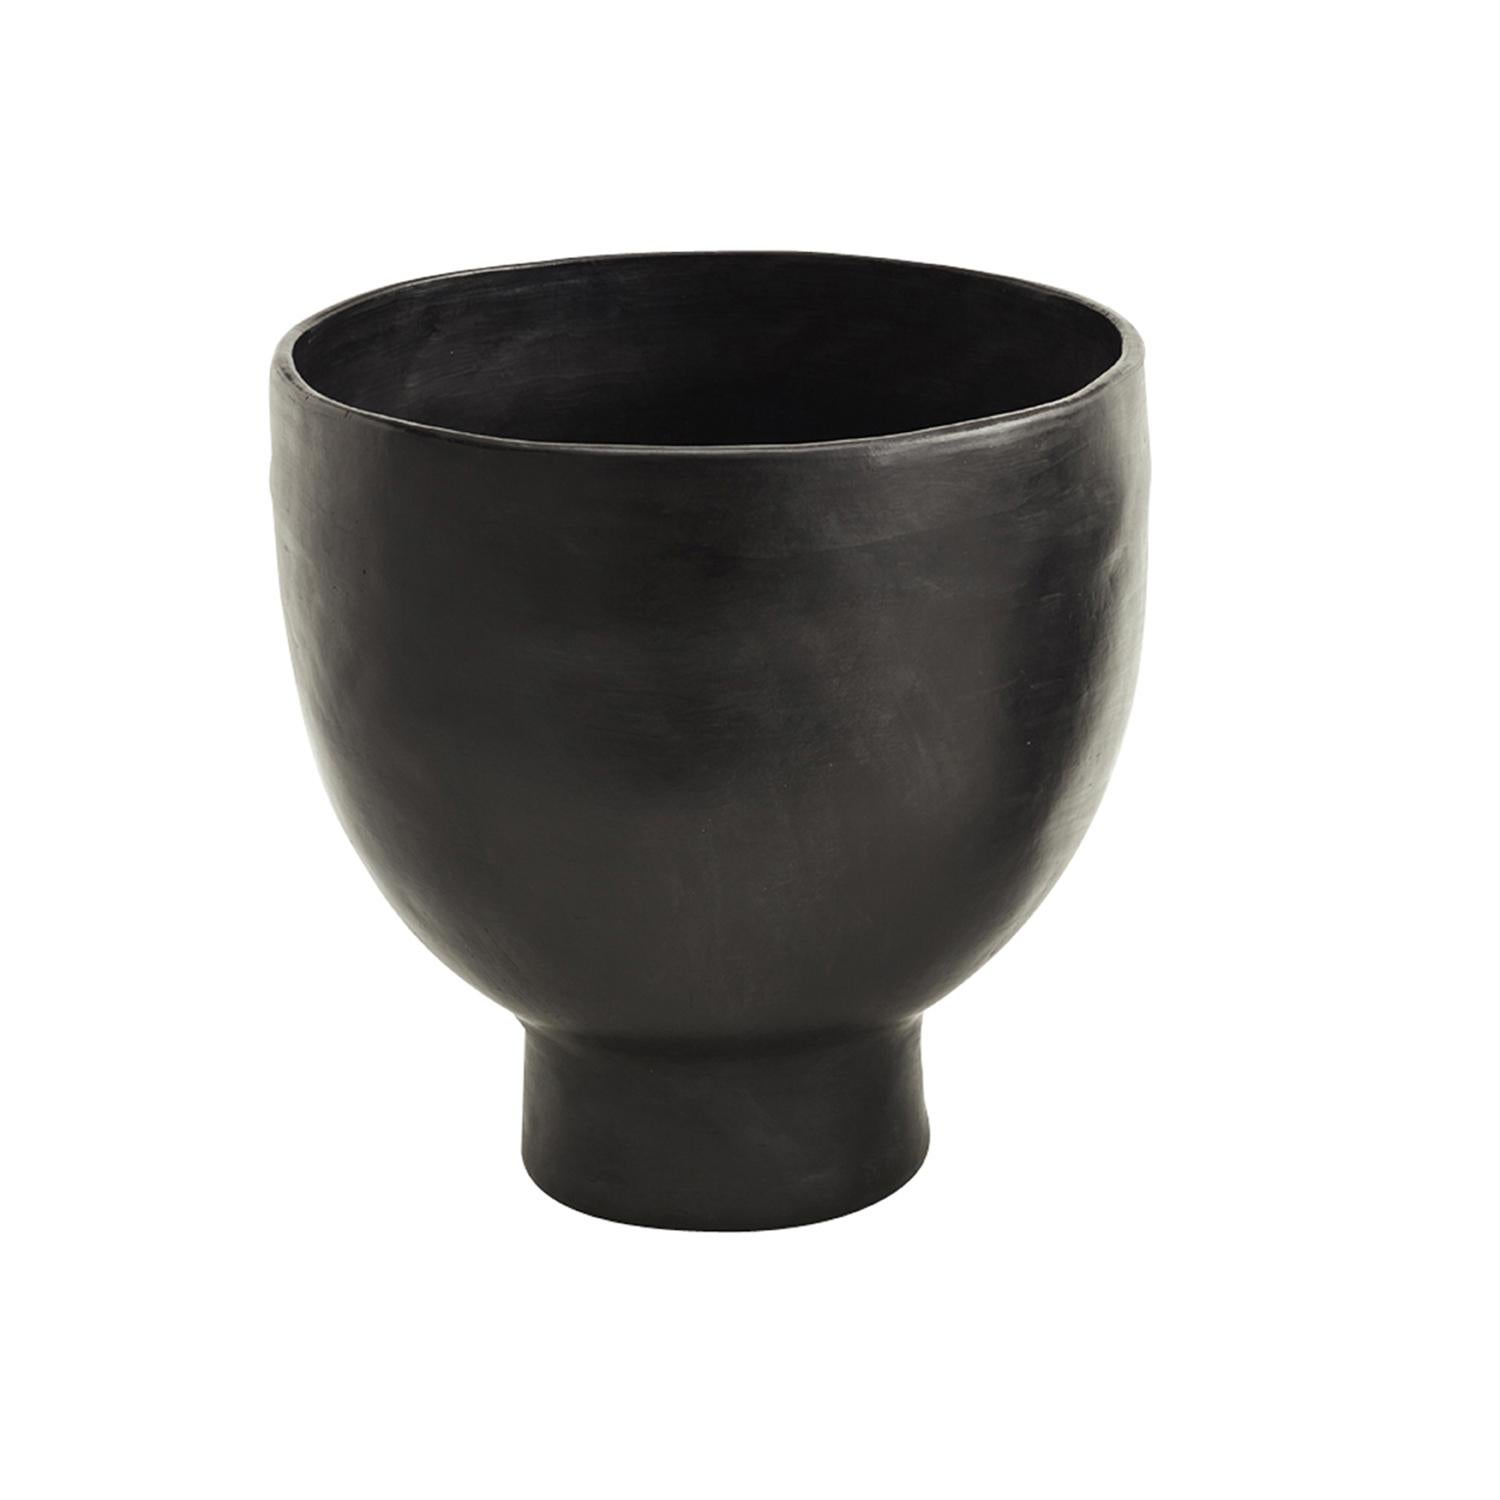 Großer Topf 1 von Sebastian Herkner
MATERIALIEN: Hitzebeständige schwarze Keramik. 
Technik: Glasiert. Im Ofen gegart und mit Halbedelsteinen poliert. 
Abmessungen: Durchmesser 43 cm x H 40 cm 
Erhältlich in den Größen Small und Mini.

Diese